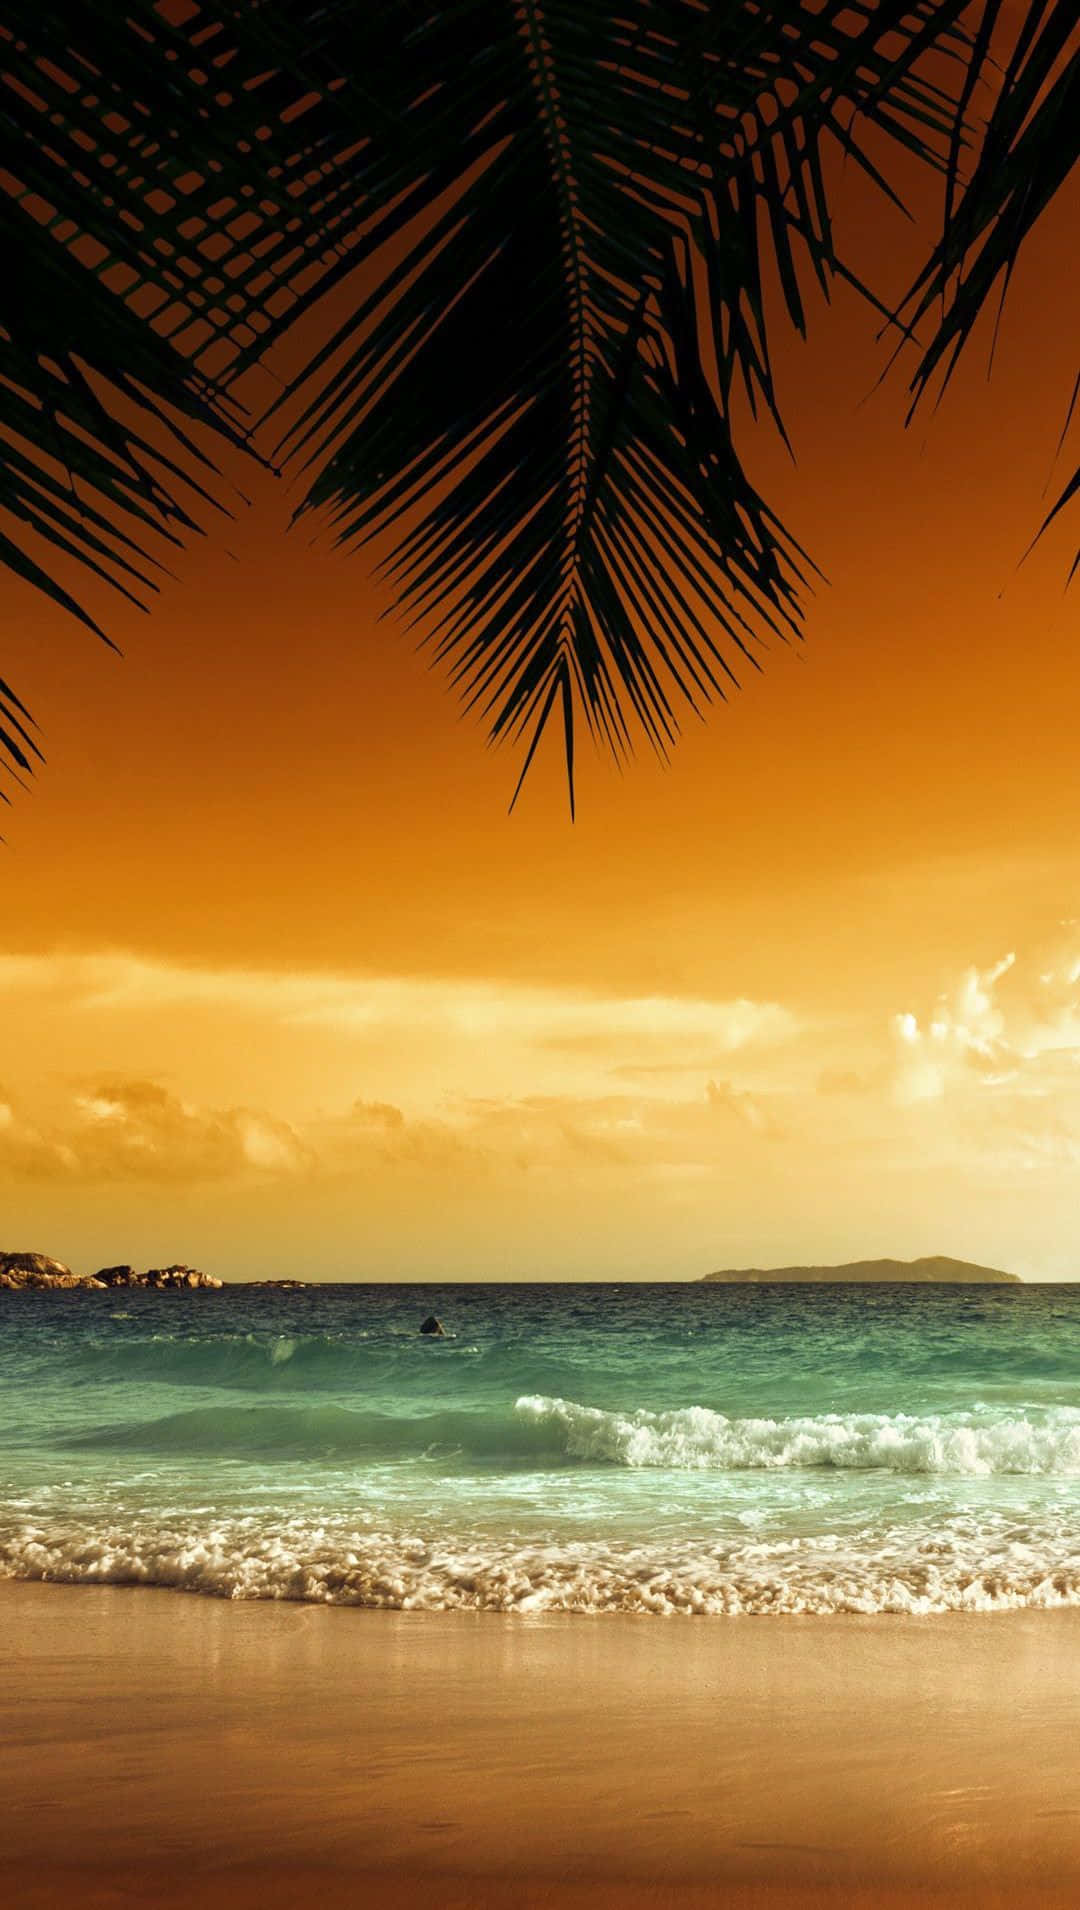 IOS Beach Sunset Wallpaper